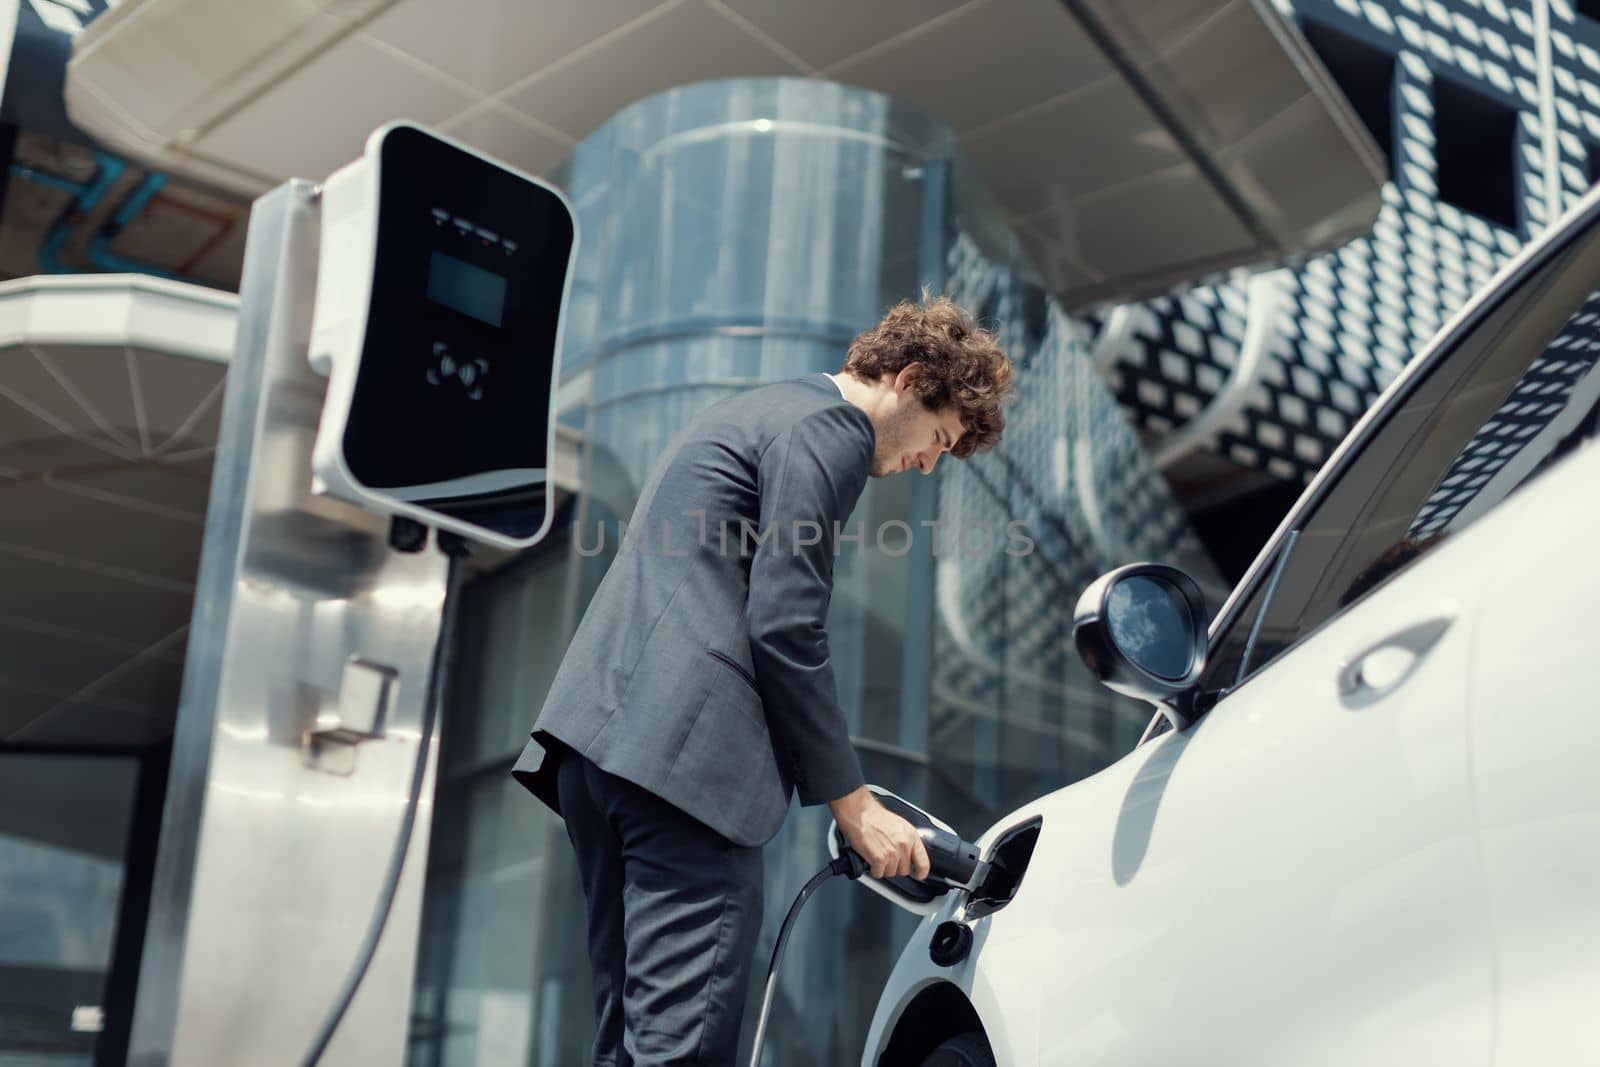 Below view closeup progressive black suit businessman recharge battery of EV car by biancoblue